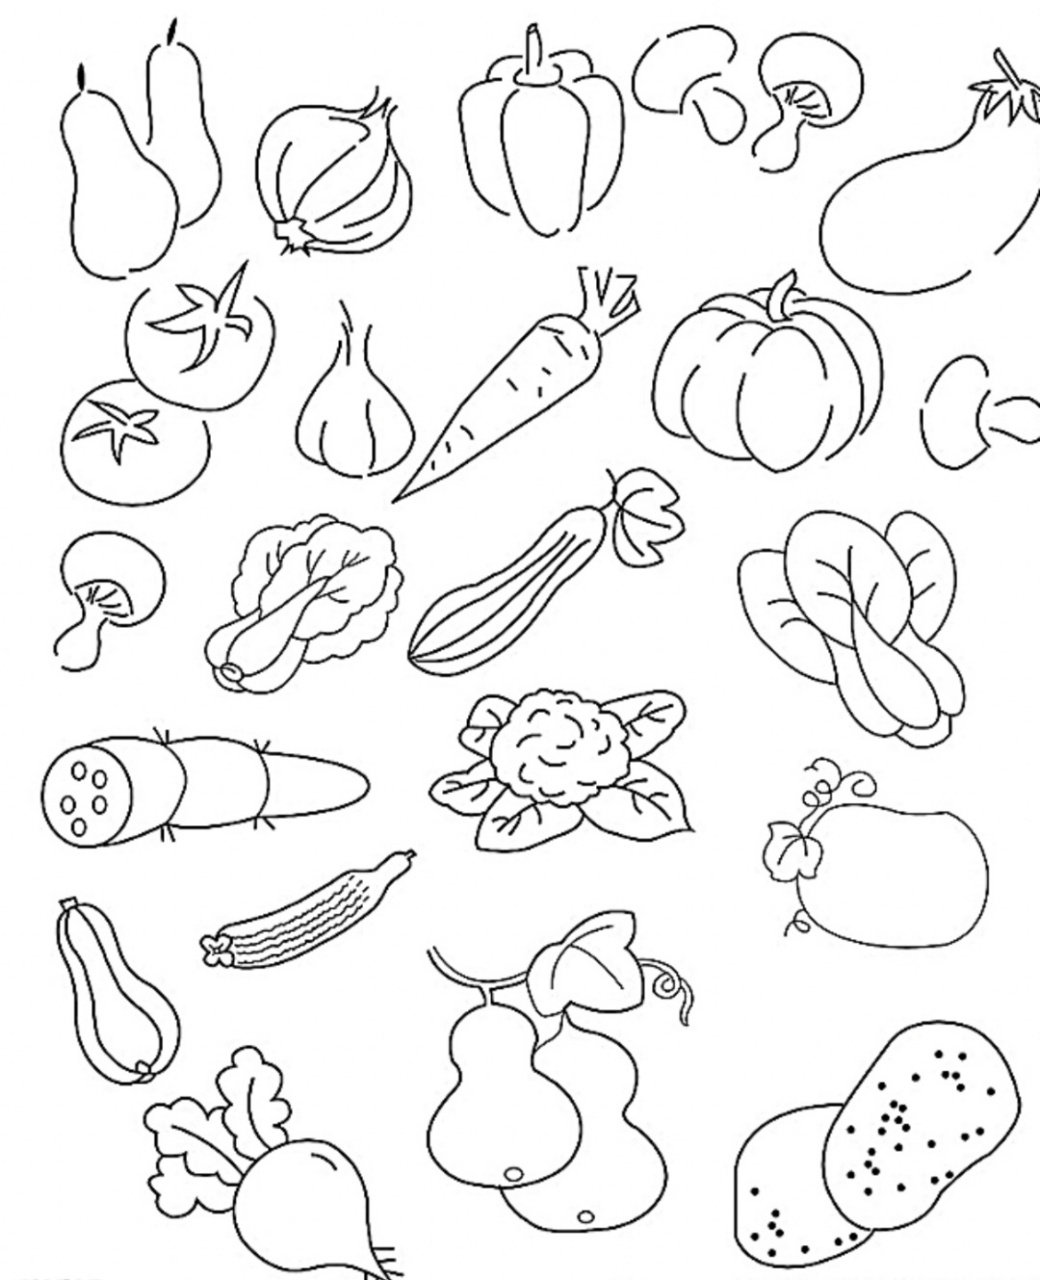 20种蔬菜简笔画夏天图片